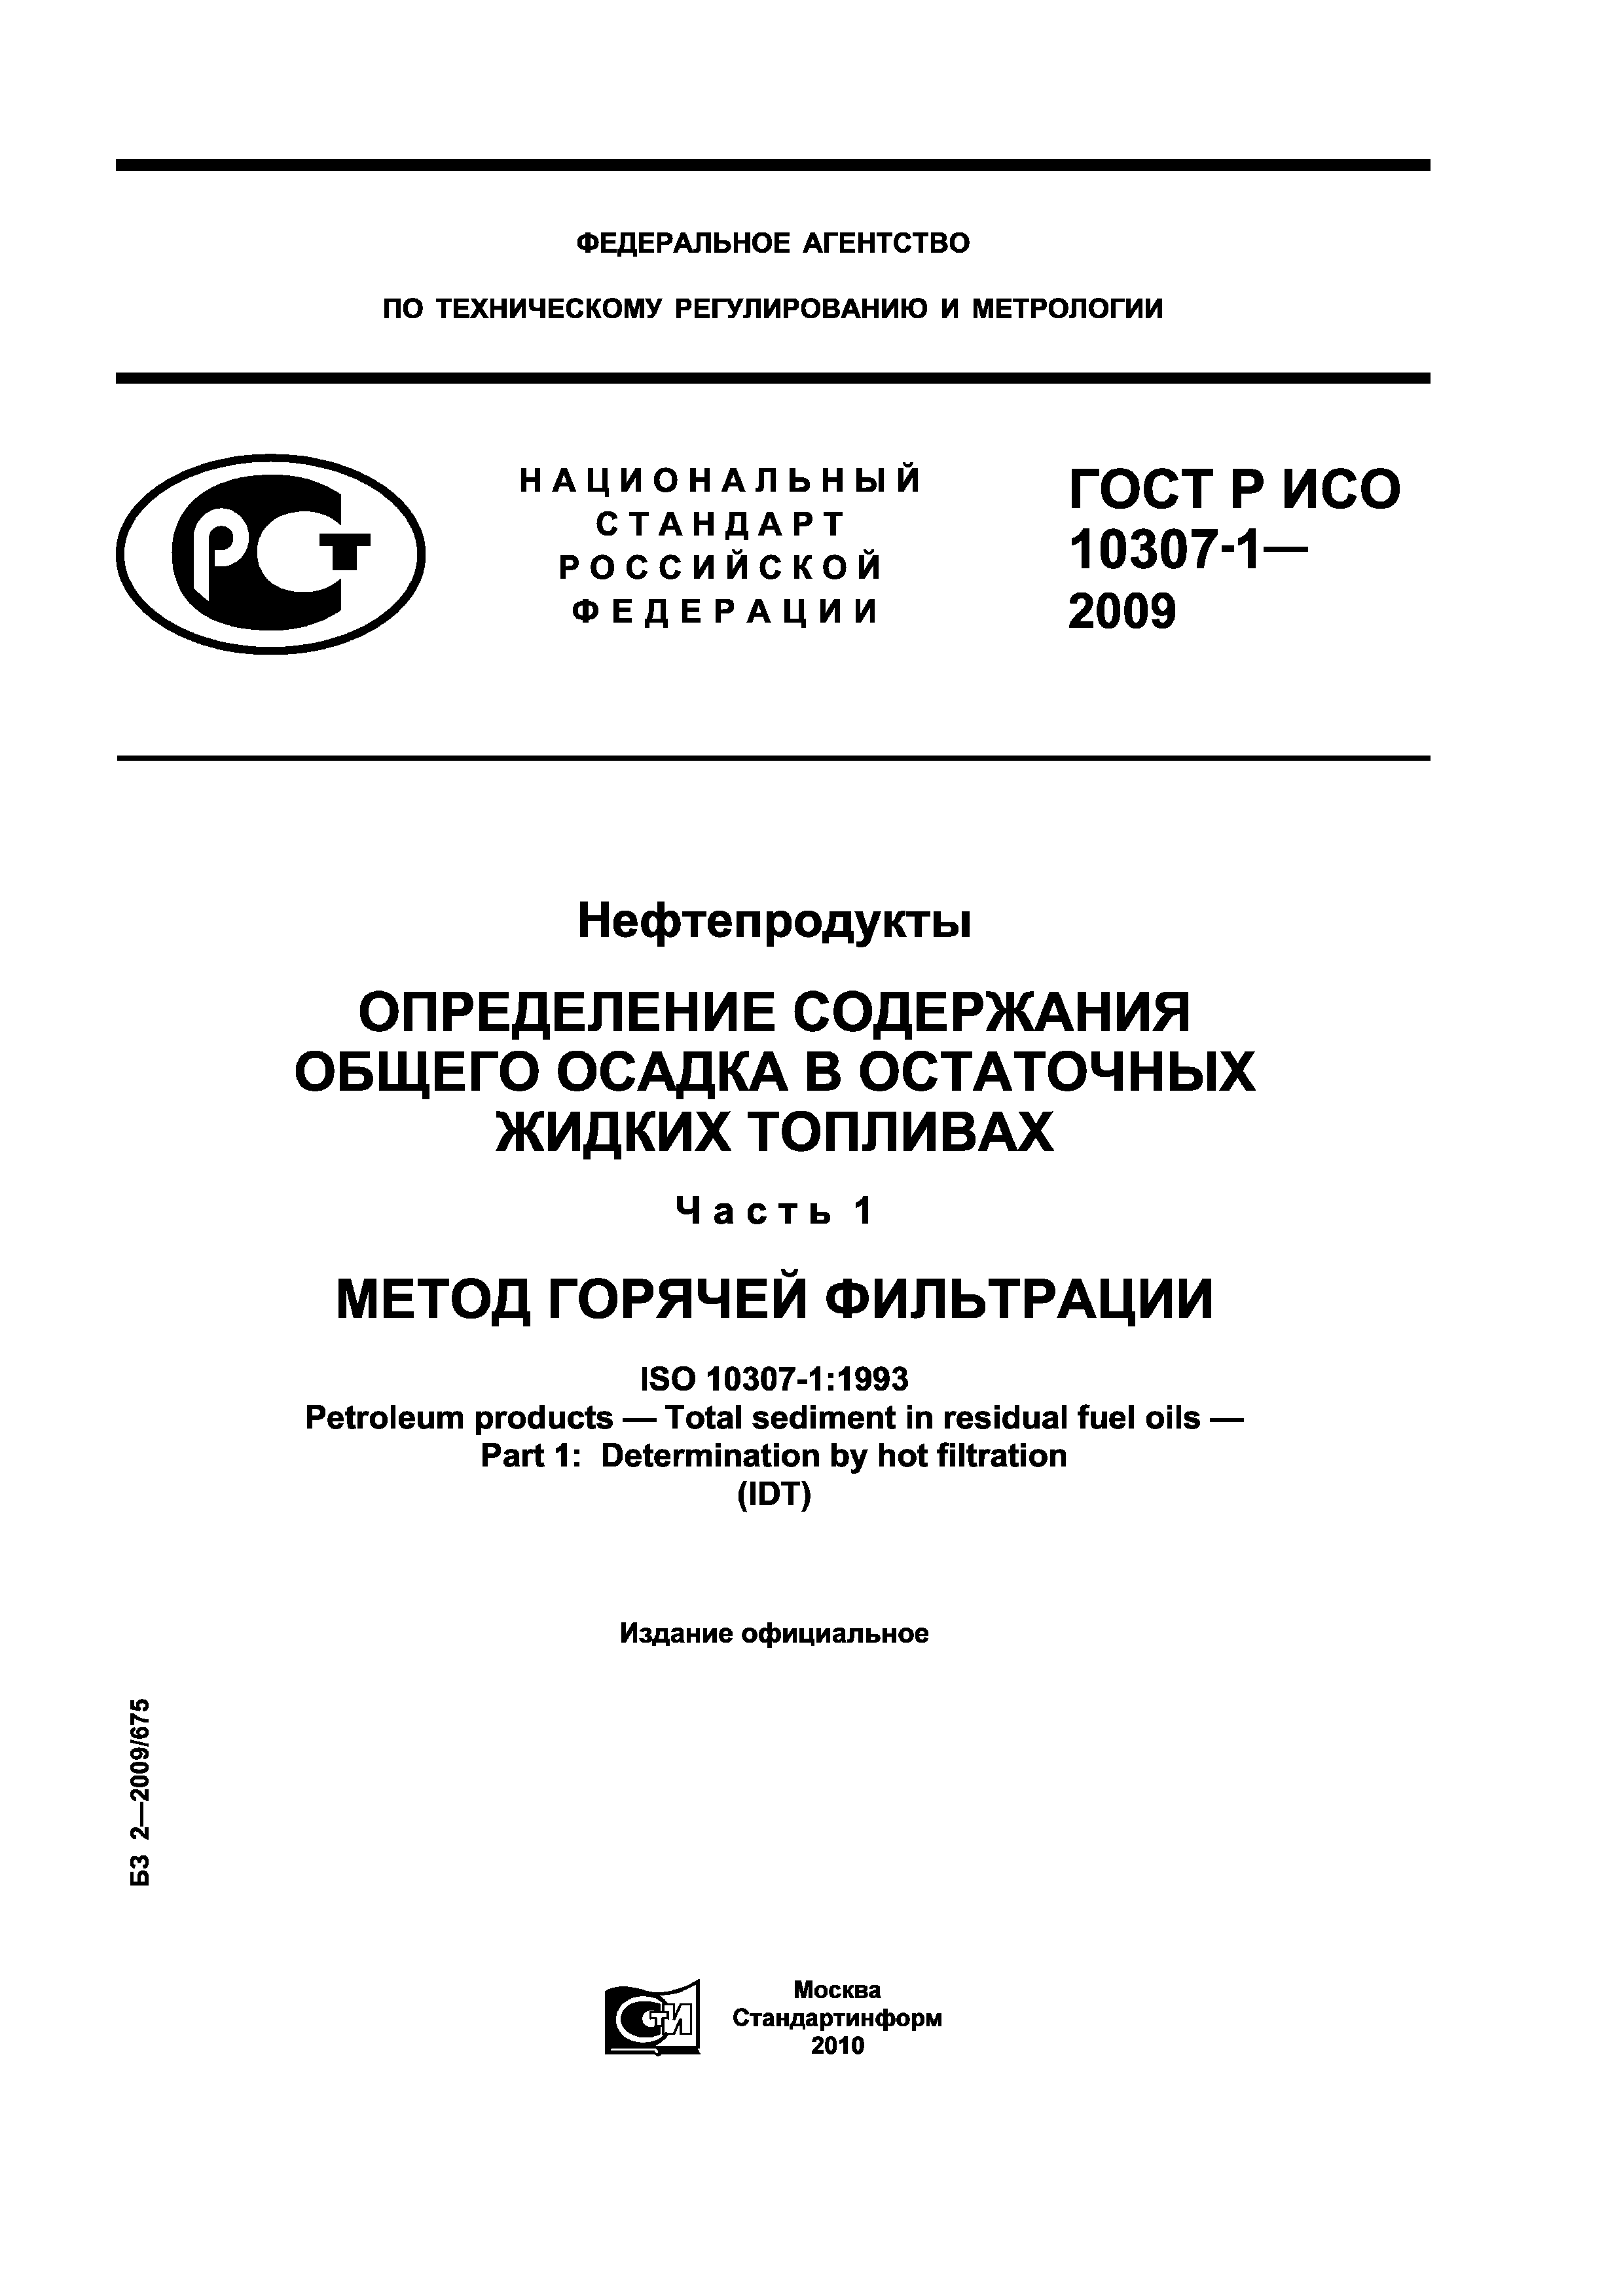 ГОСТ Р ИСО 10307-1-2009